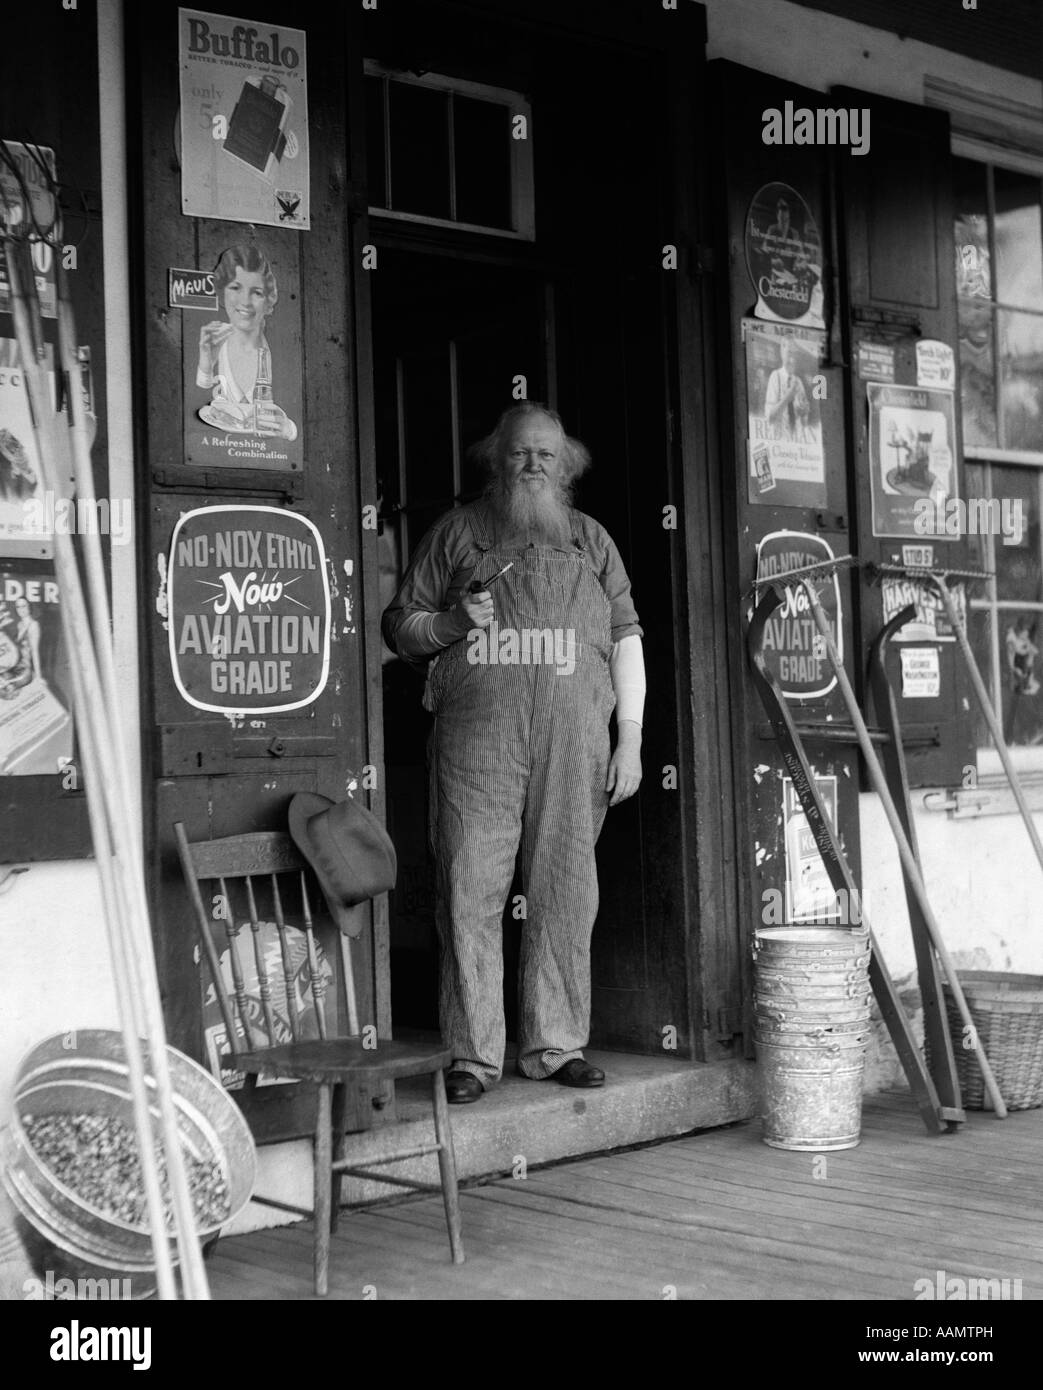 1930s ELDERLY BEARDED MAN IN OVERALLS SMOKING PIPE STANDING IN DOORWAY OF GENERAL STORE Stock Photo